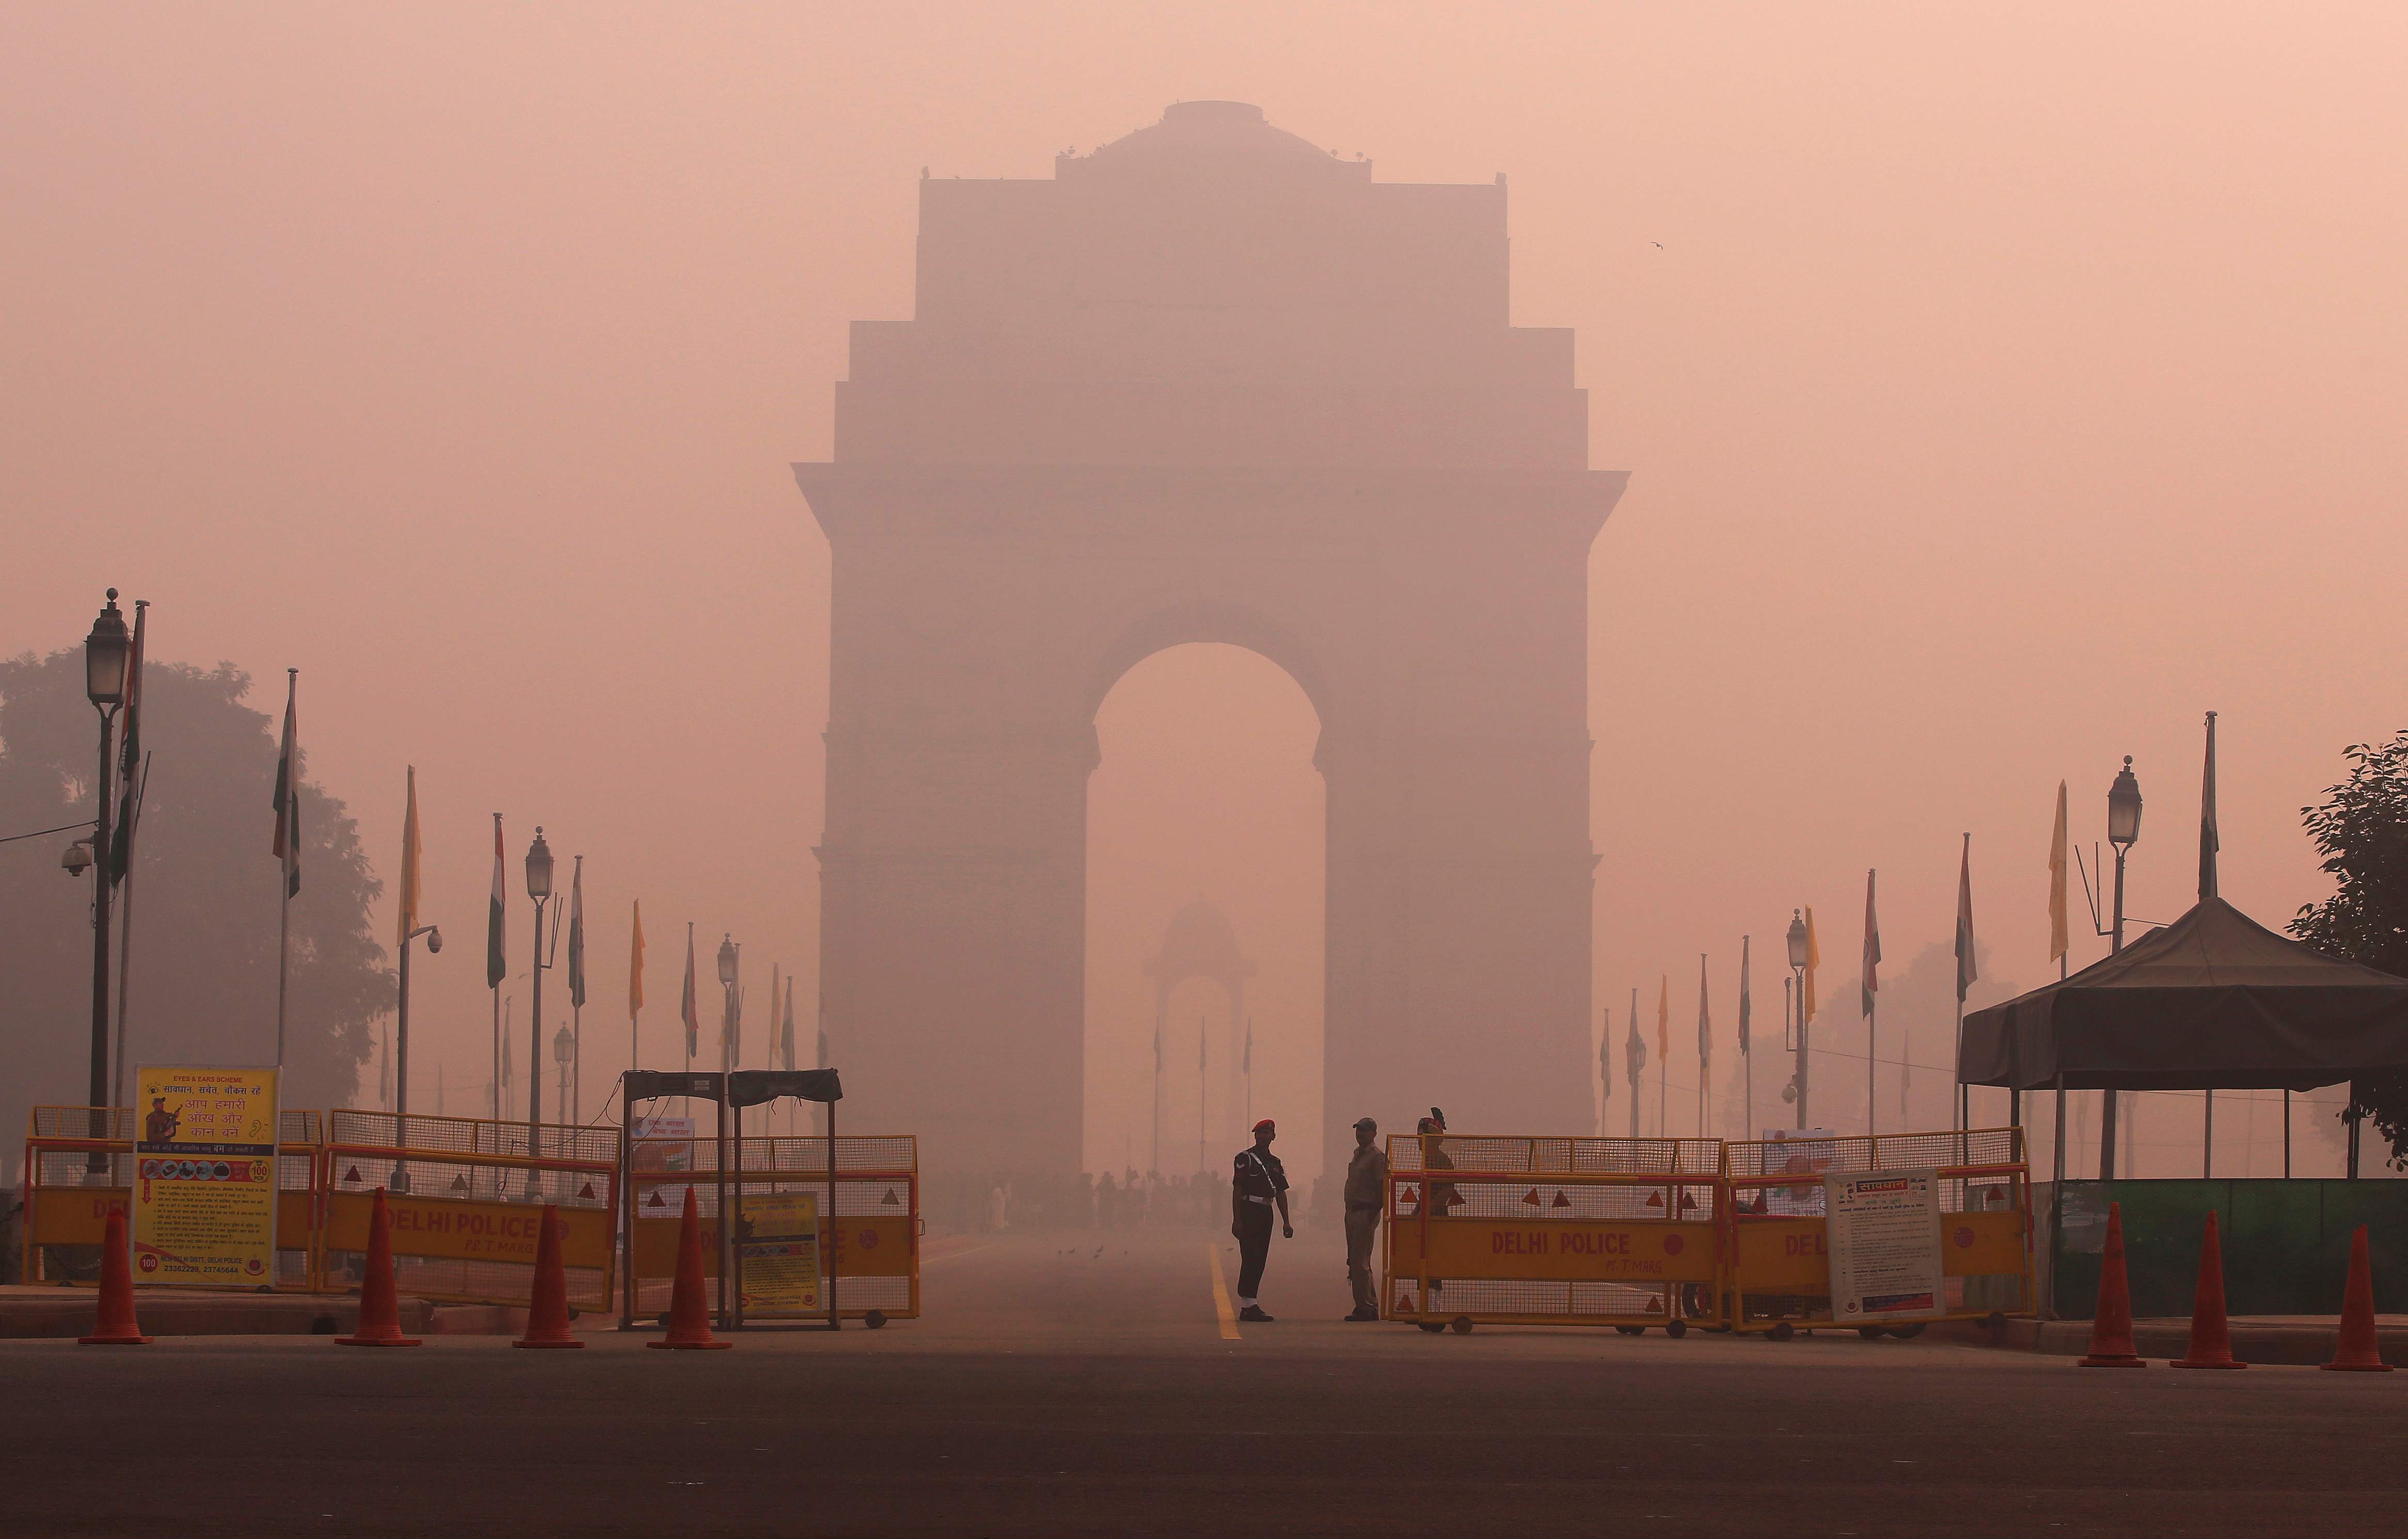 उत्तर भारत में बढ़ते वायु प्रदूषण से घट सकते हैं ज़िंदगी के नौ साल: अध्ययन